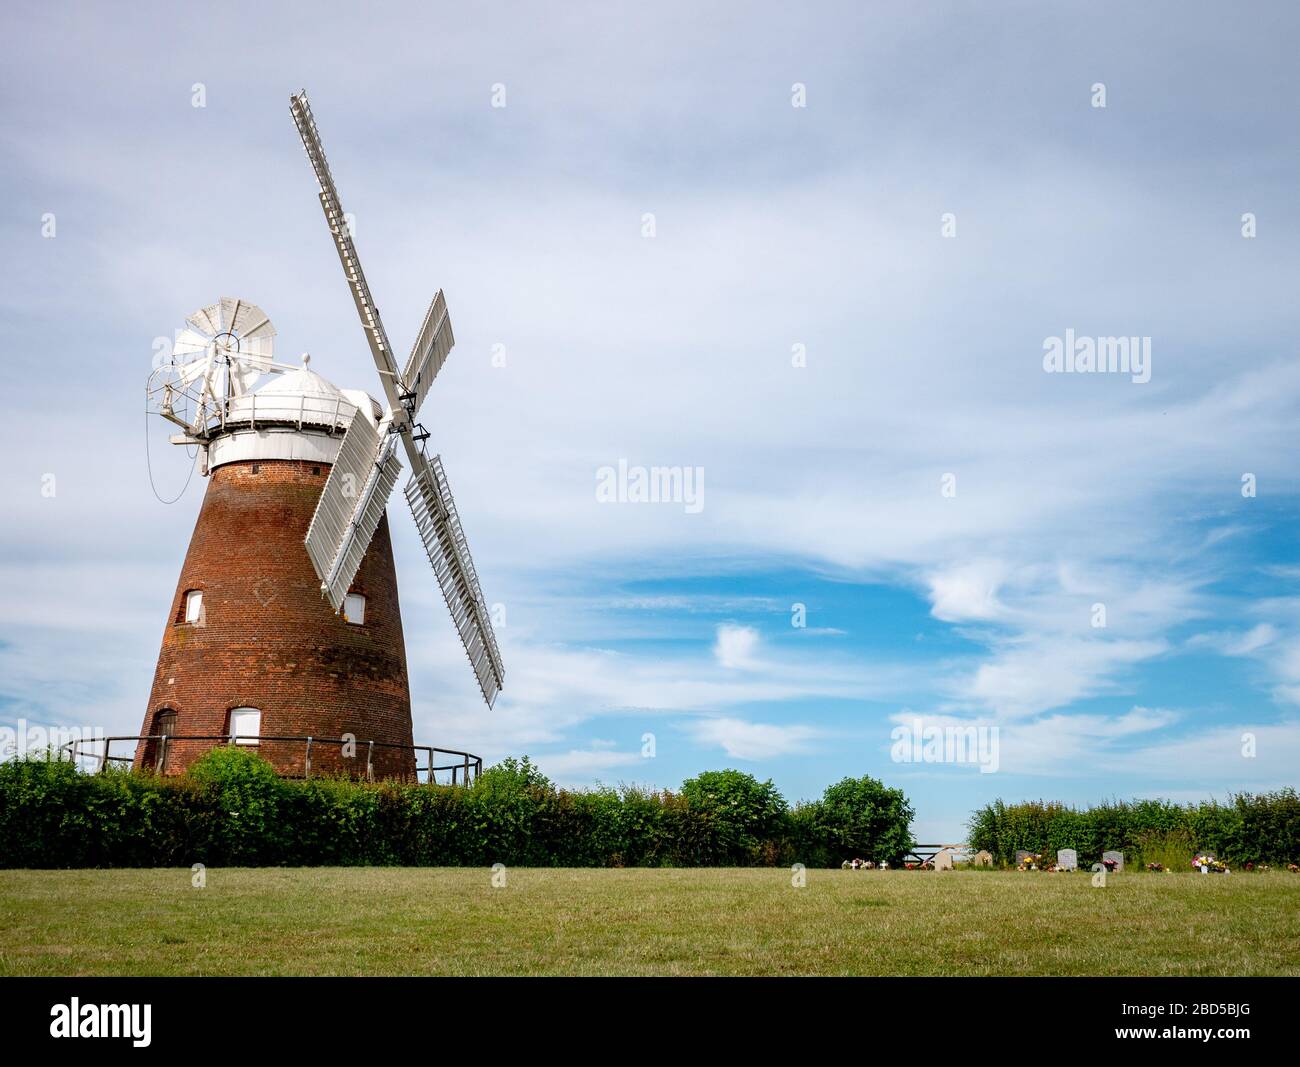 Windmühle Mit Thaxted. Eine traditionelle alte englische Windmühle in der Nähe des Essex-Dorfes Thaxted, die sich vor einem blauen Sommerhimmel befindet. Stockfoto